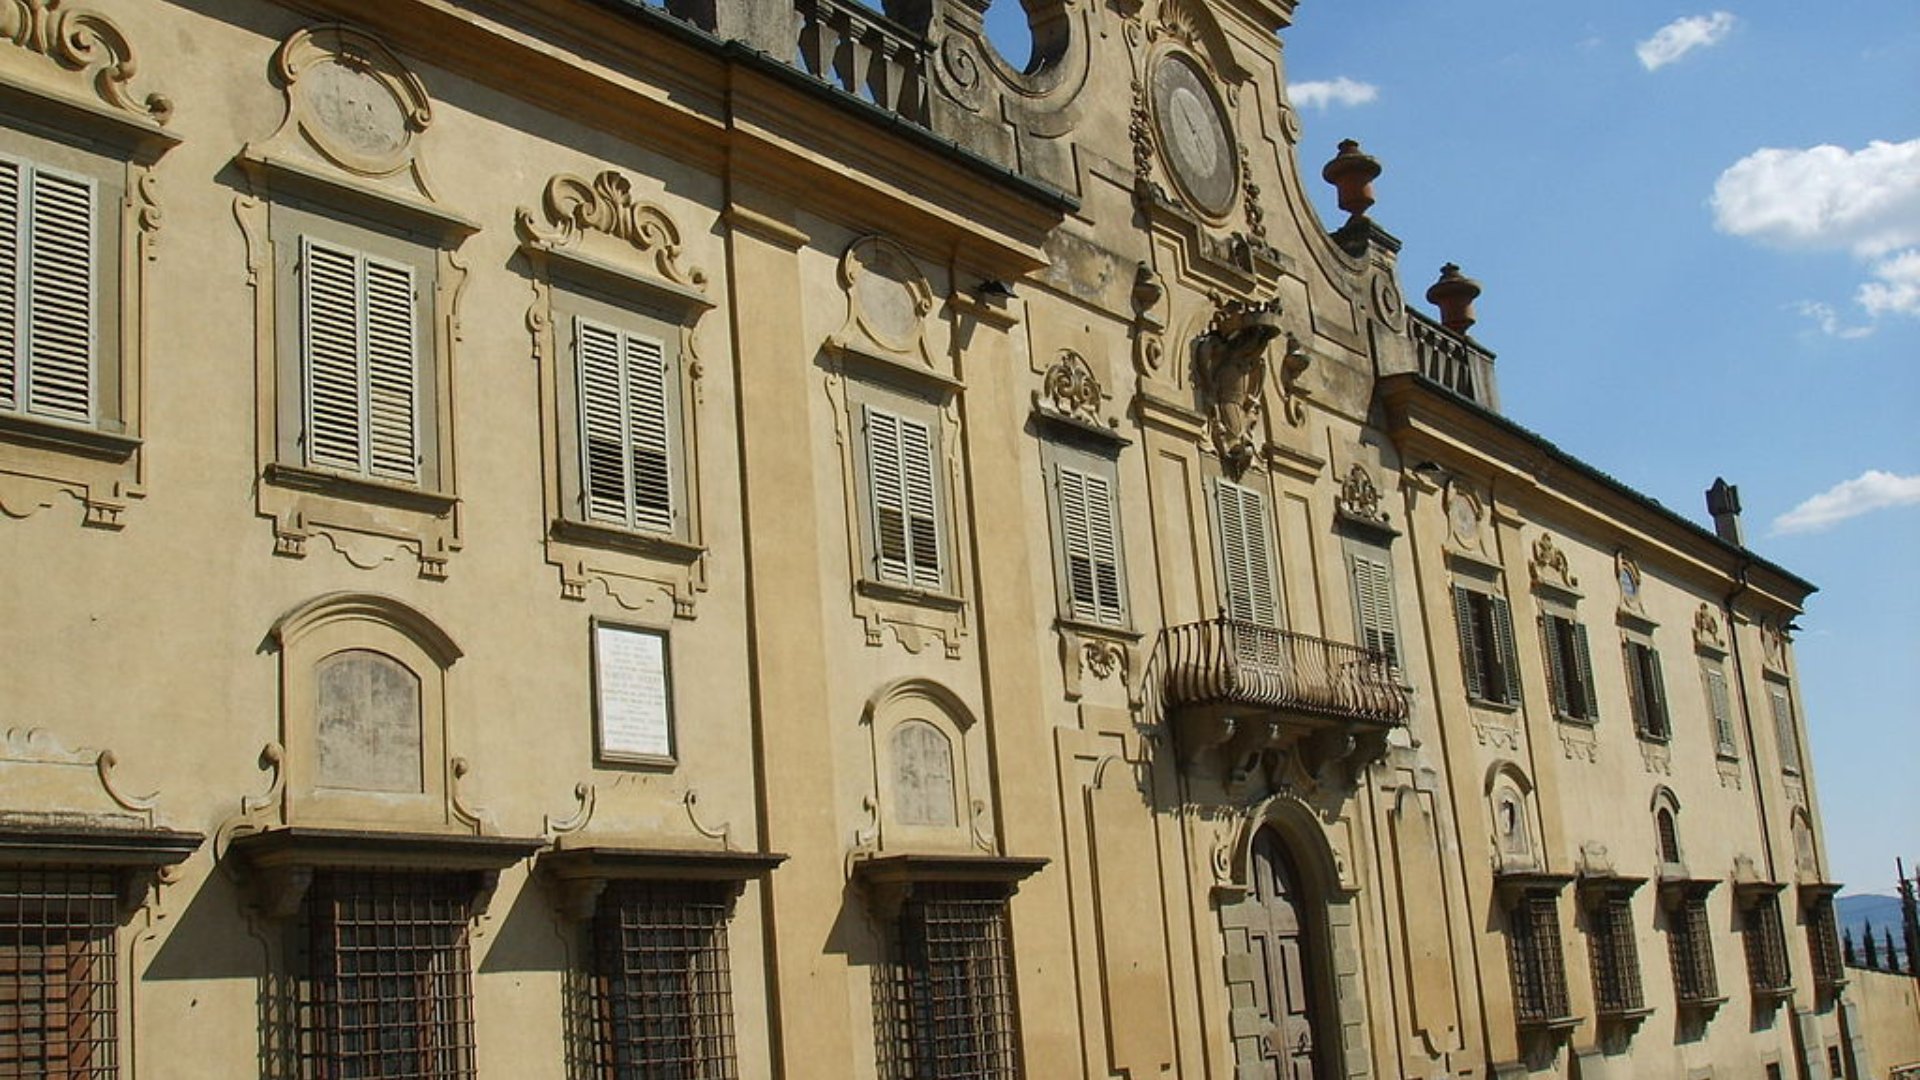 Villa Corsini a Castello